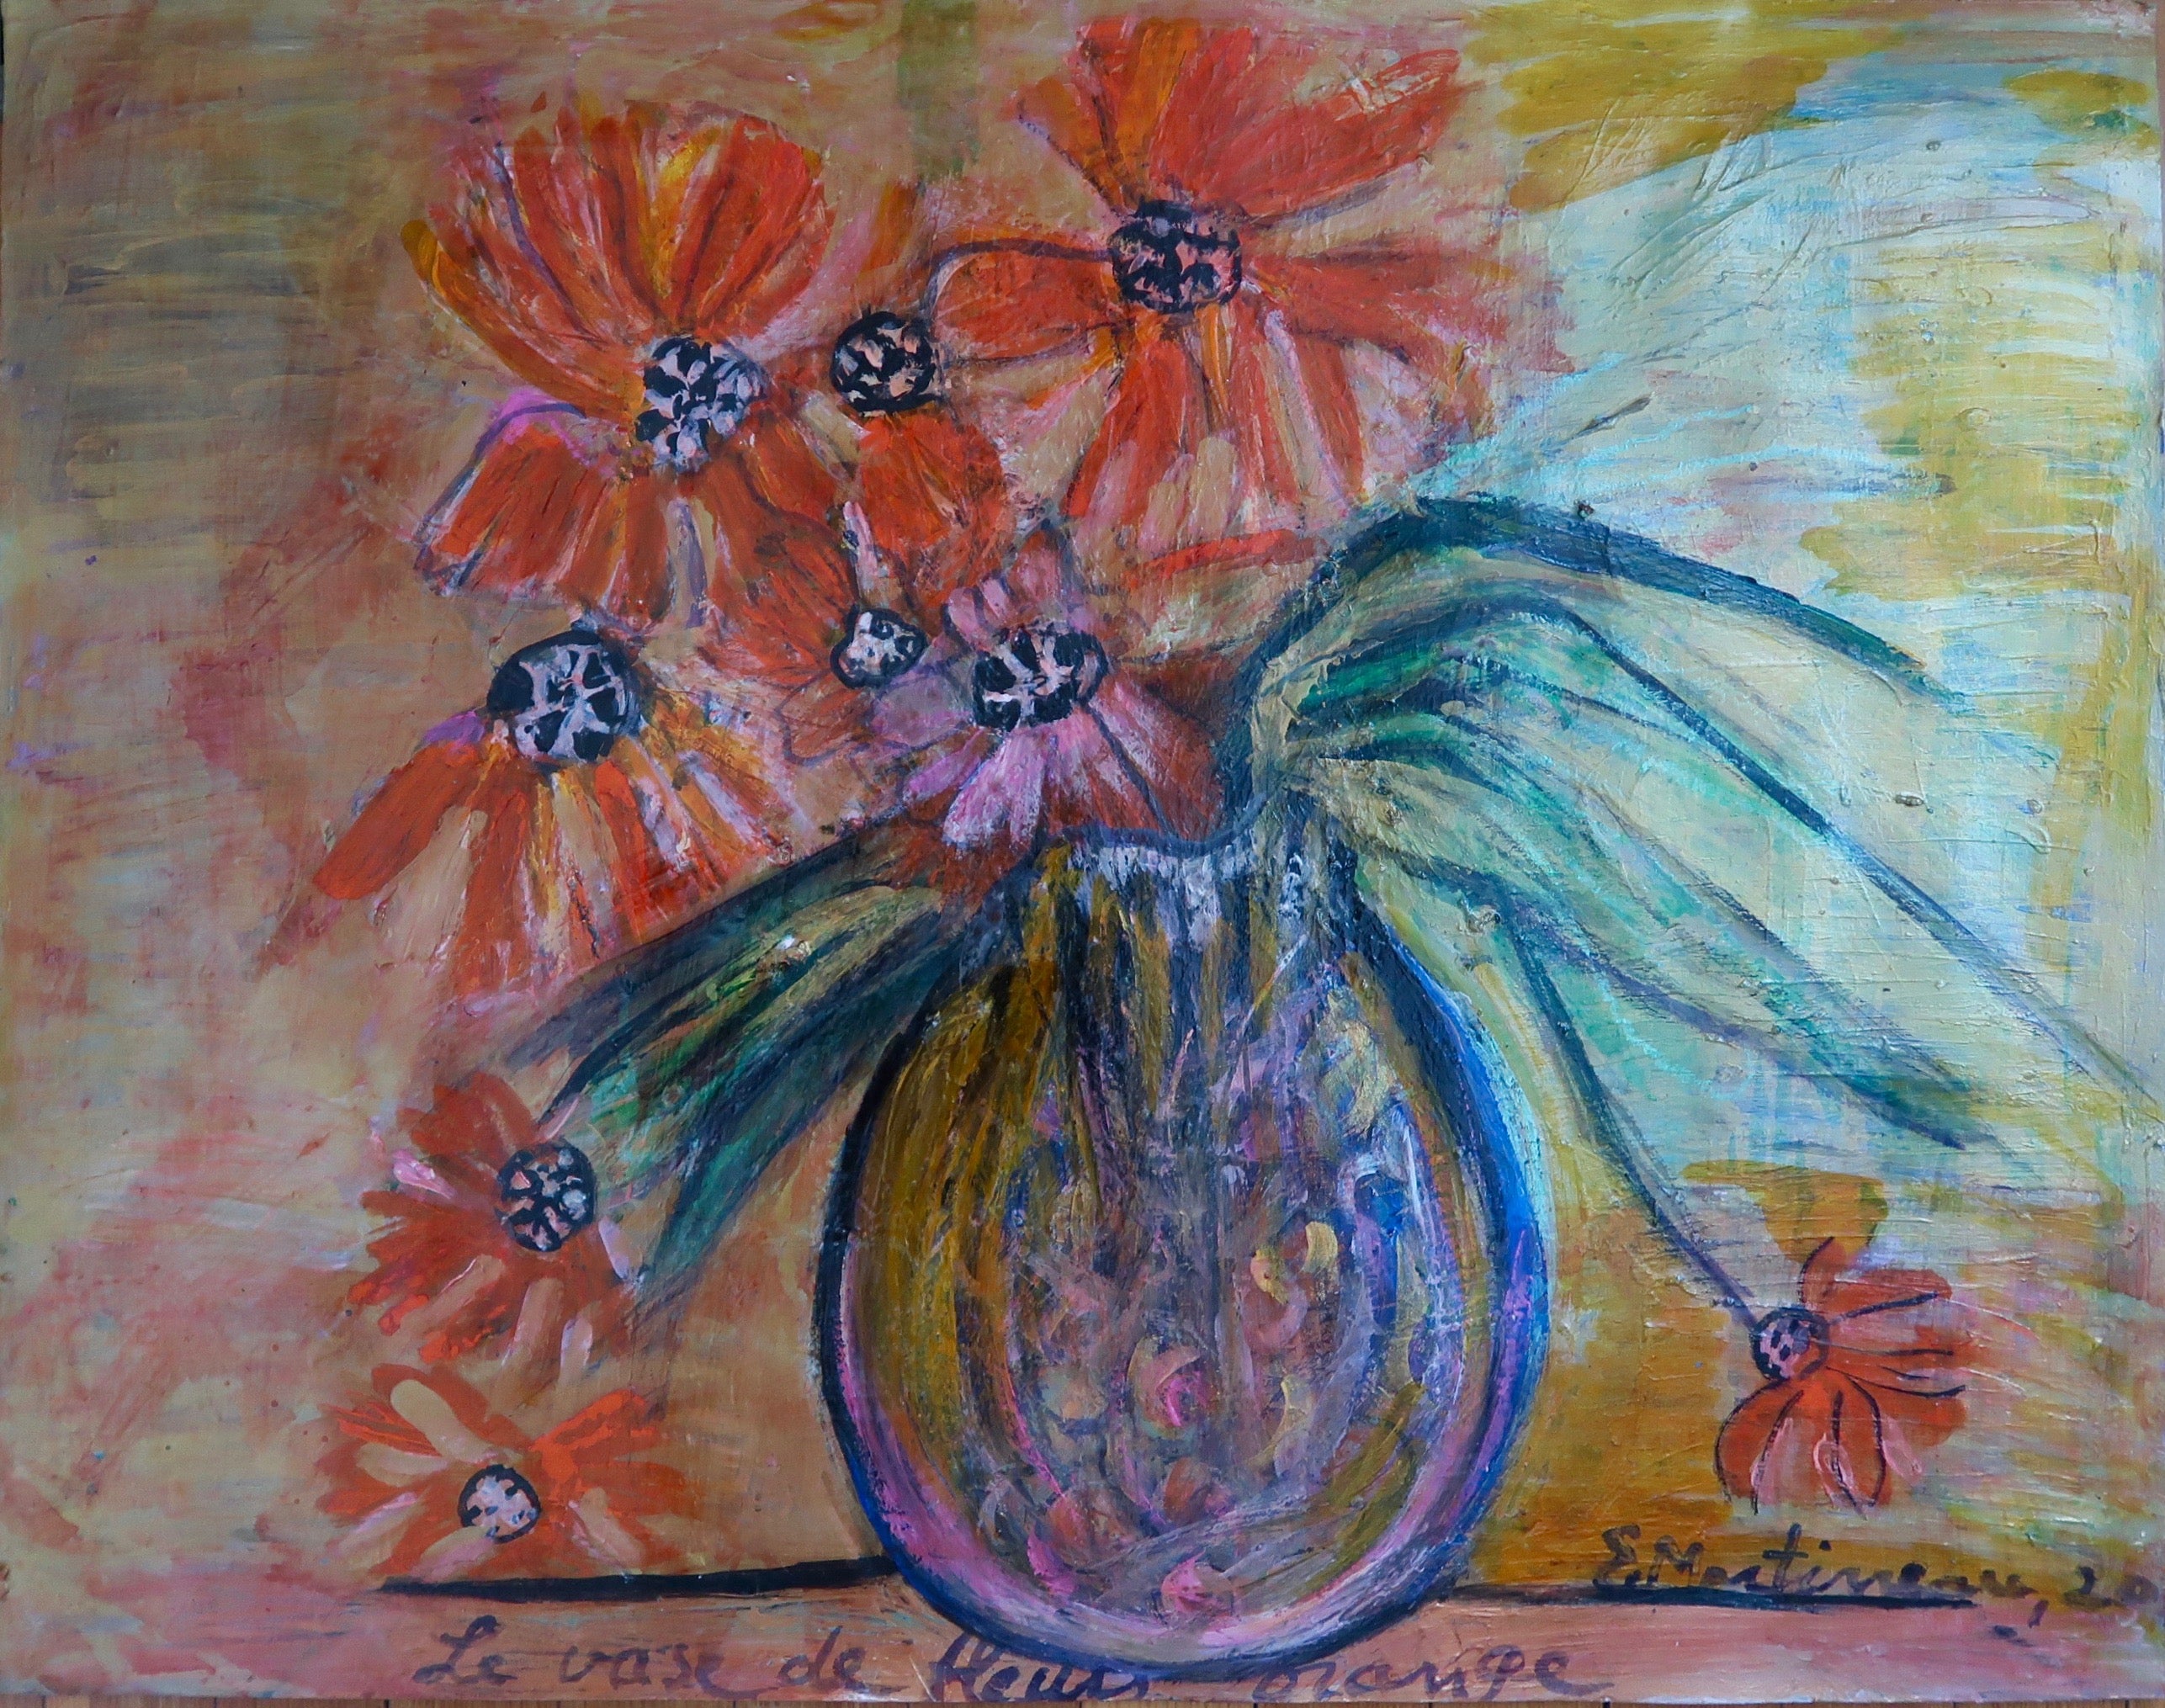 x Le Vase de Fleurs Orange (Vase with Orange Flowers)